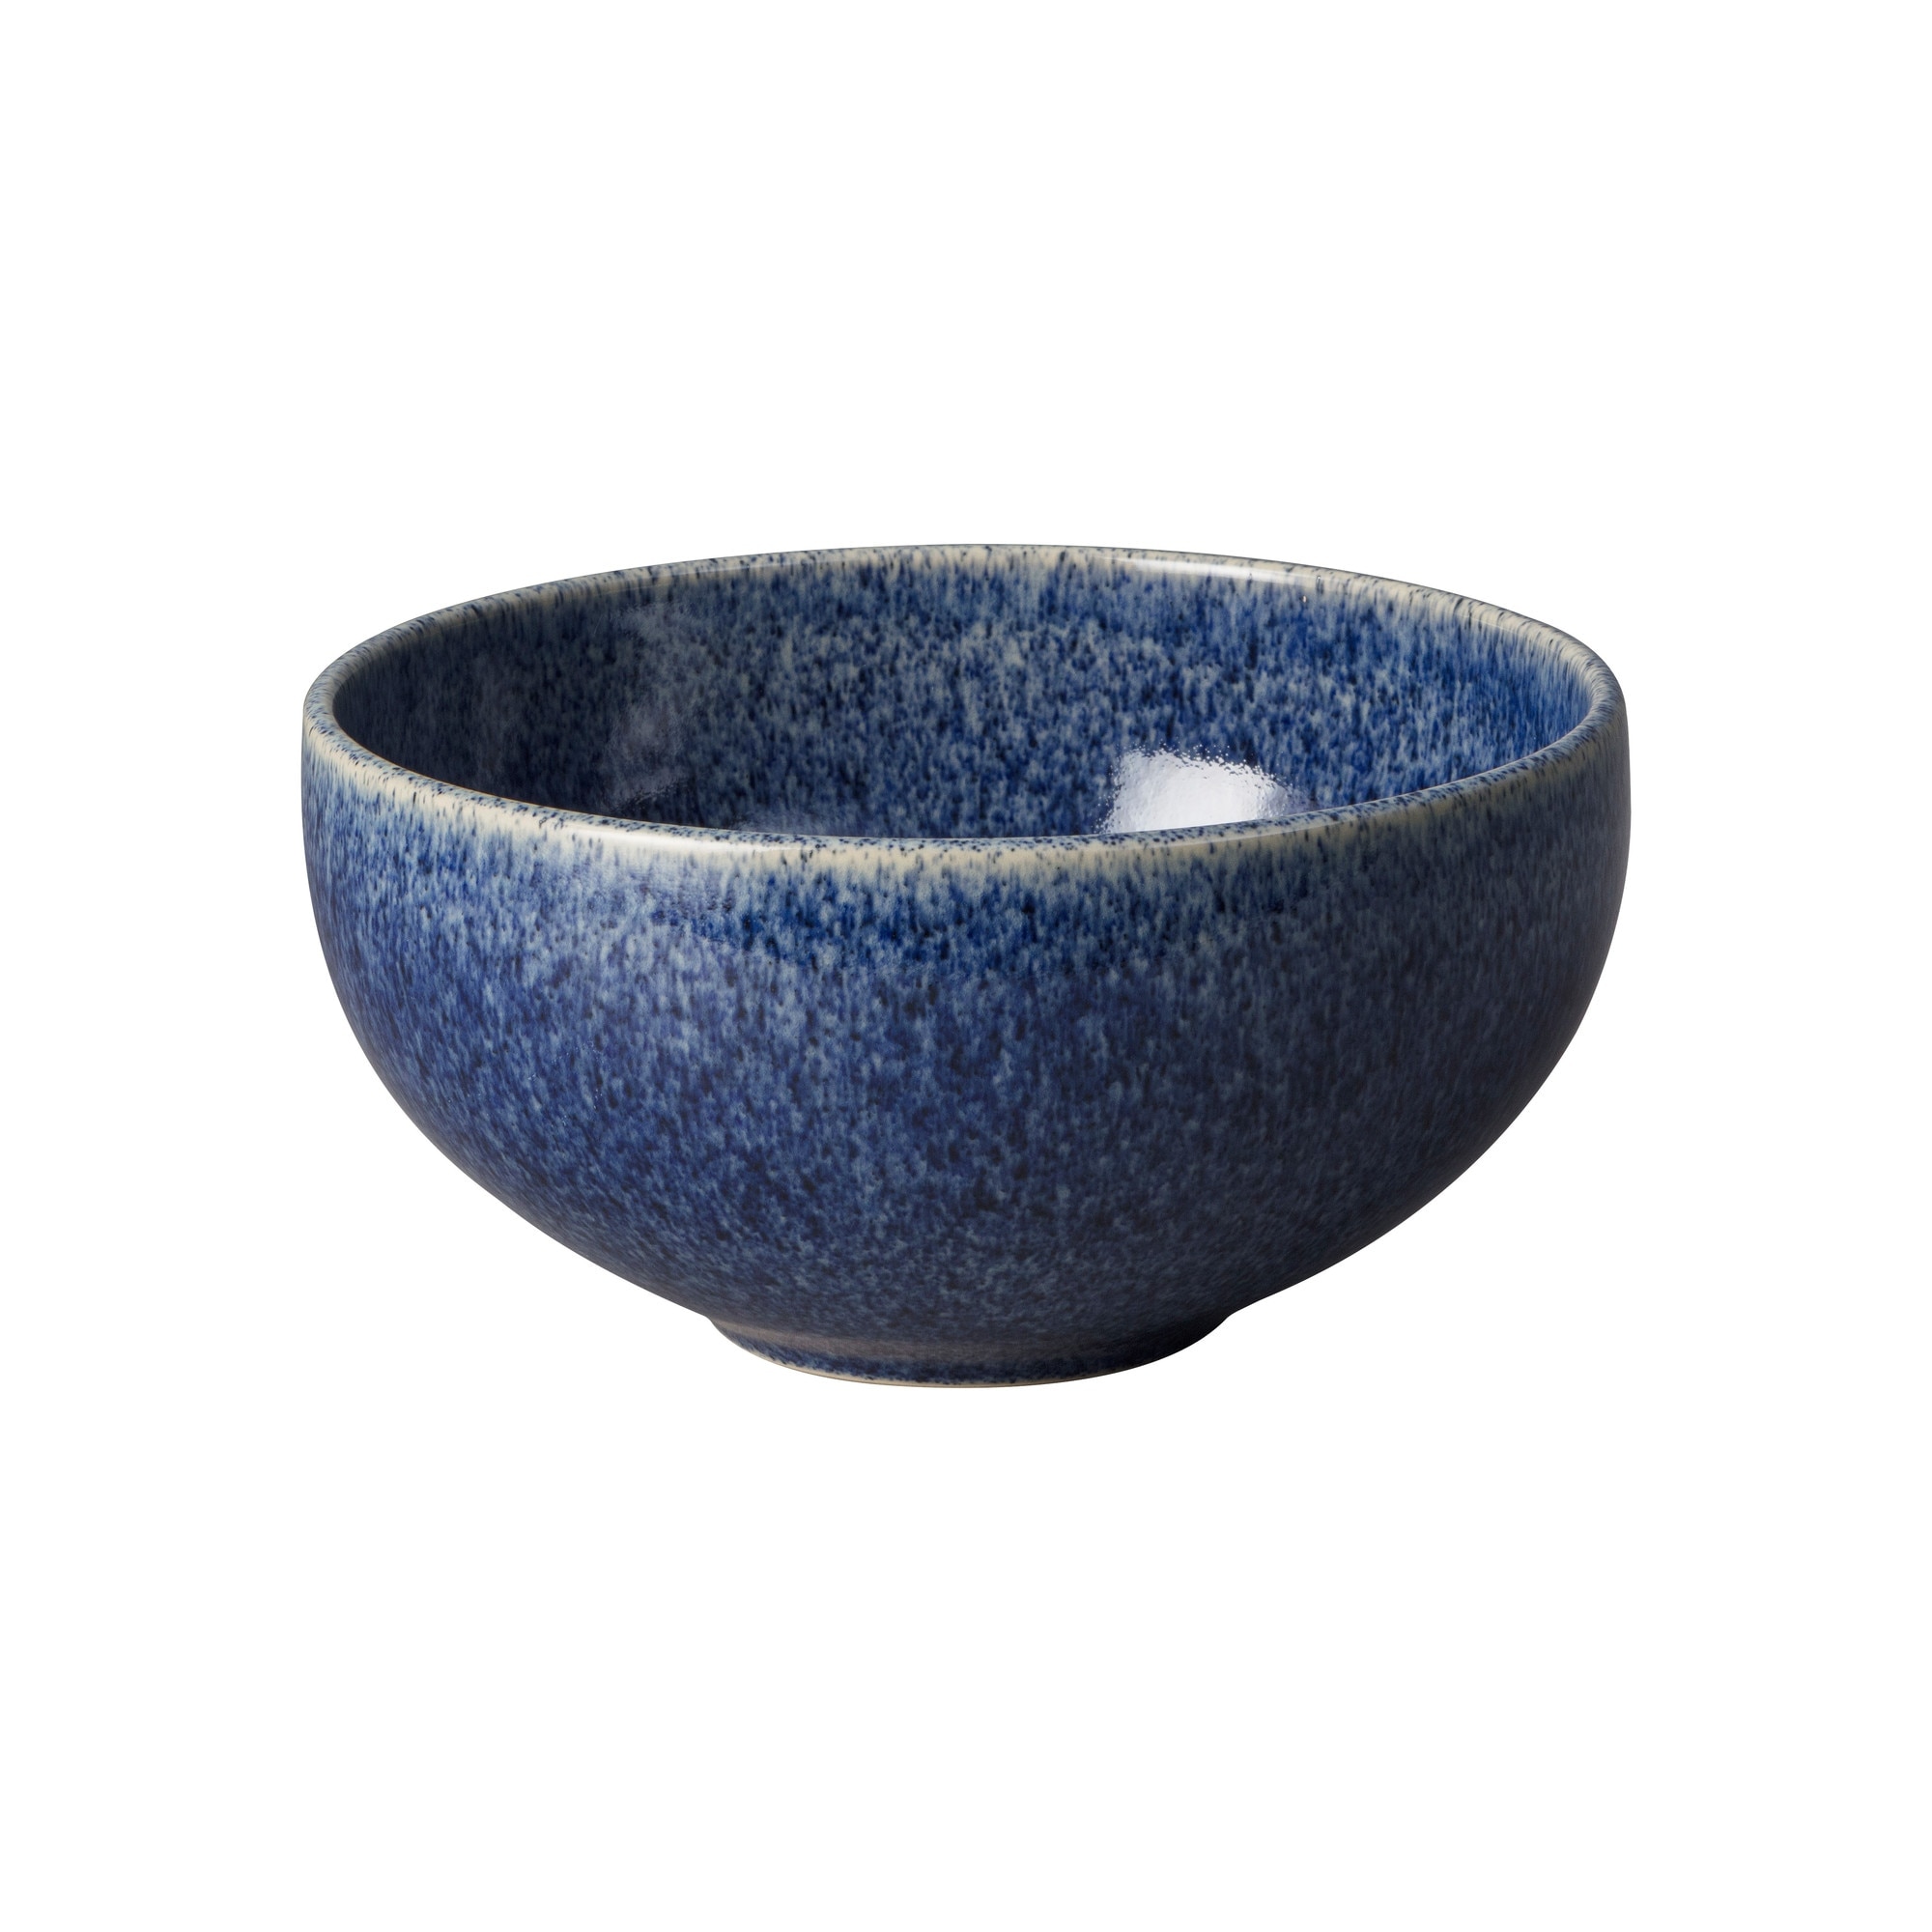 Product photograph of Studio Blue Cobalt Ramen Large Noodle Bowl from Denby Retail Ltd